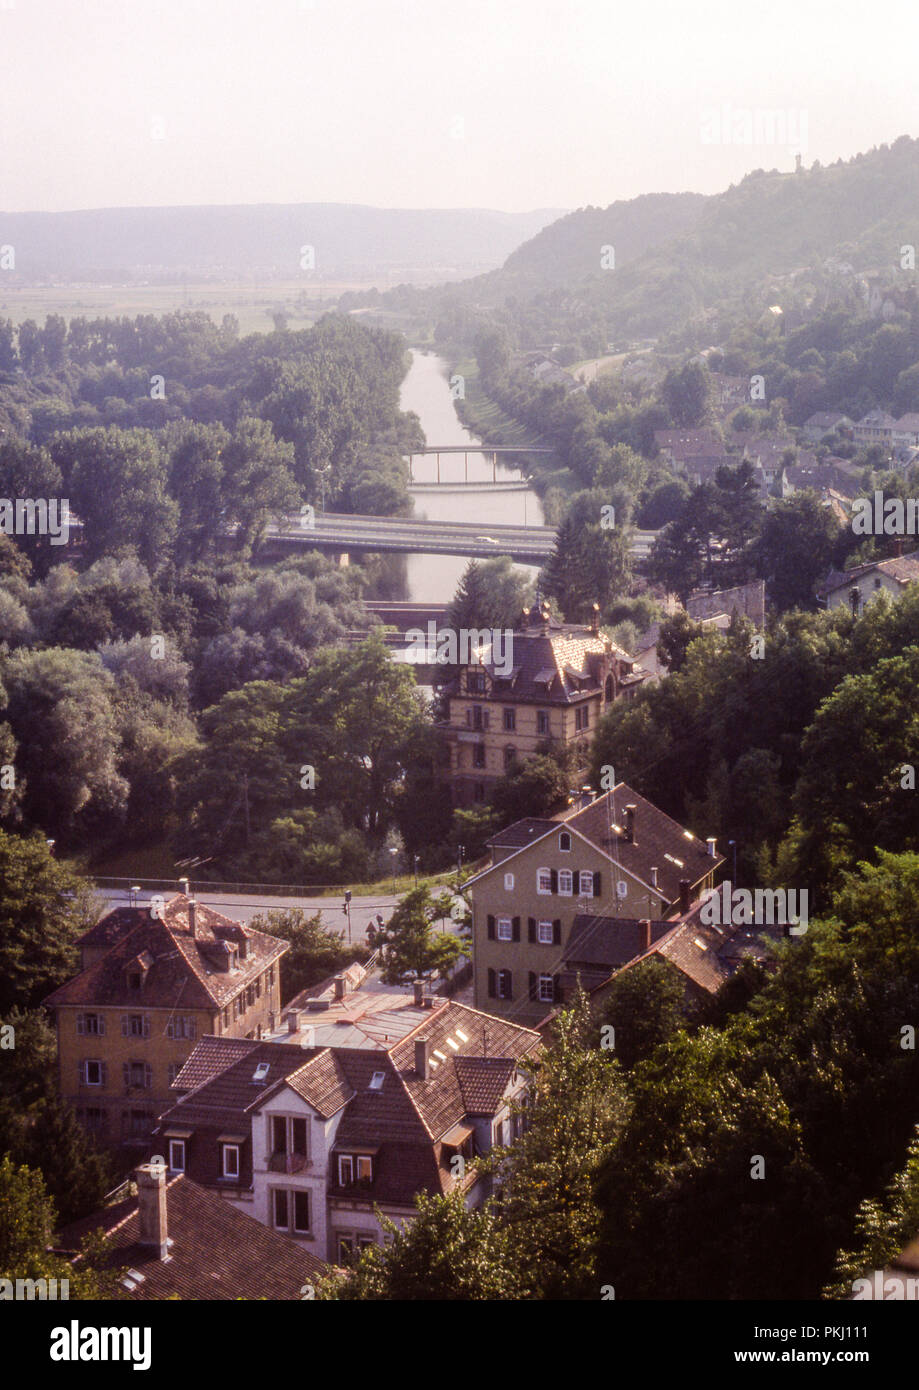 Una vista del Paseo de los filósofos del Castillo de Heidelberg, adoptado en 1975 en la película diapositiva color de 35 mm. Foto de stock